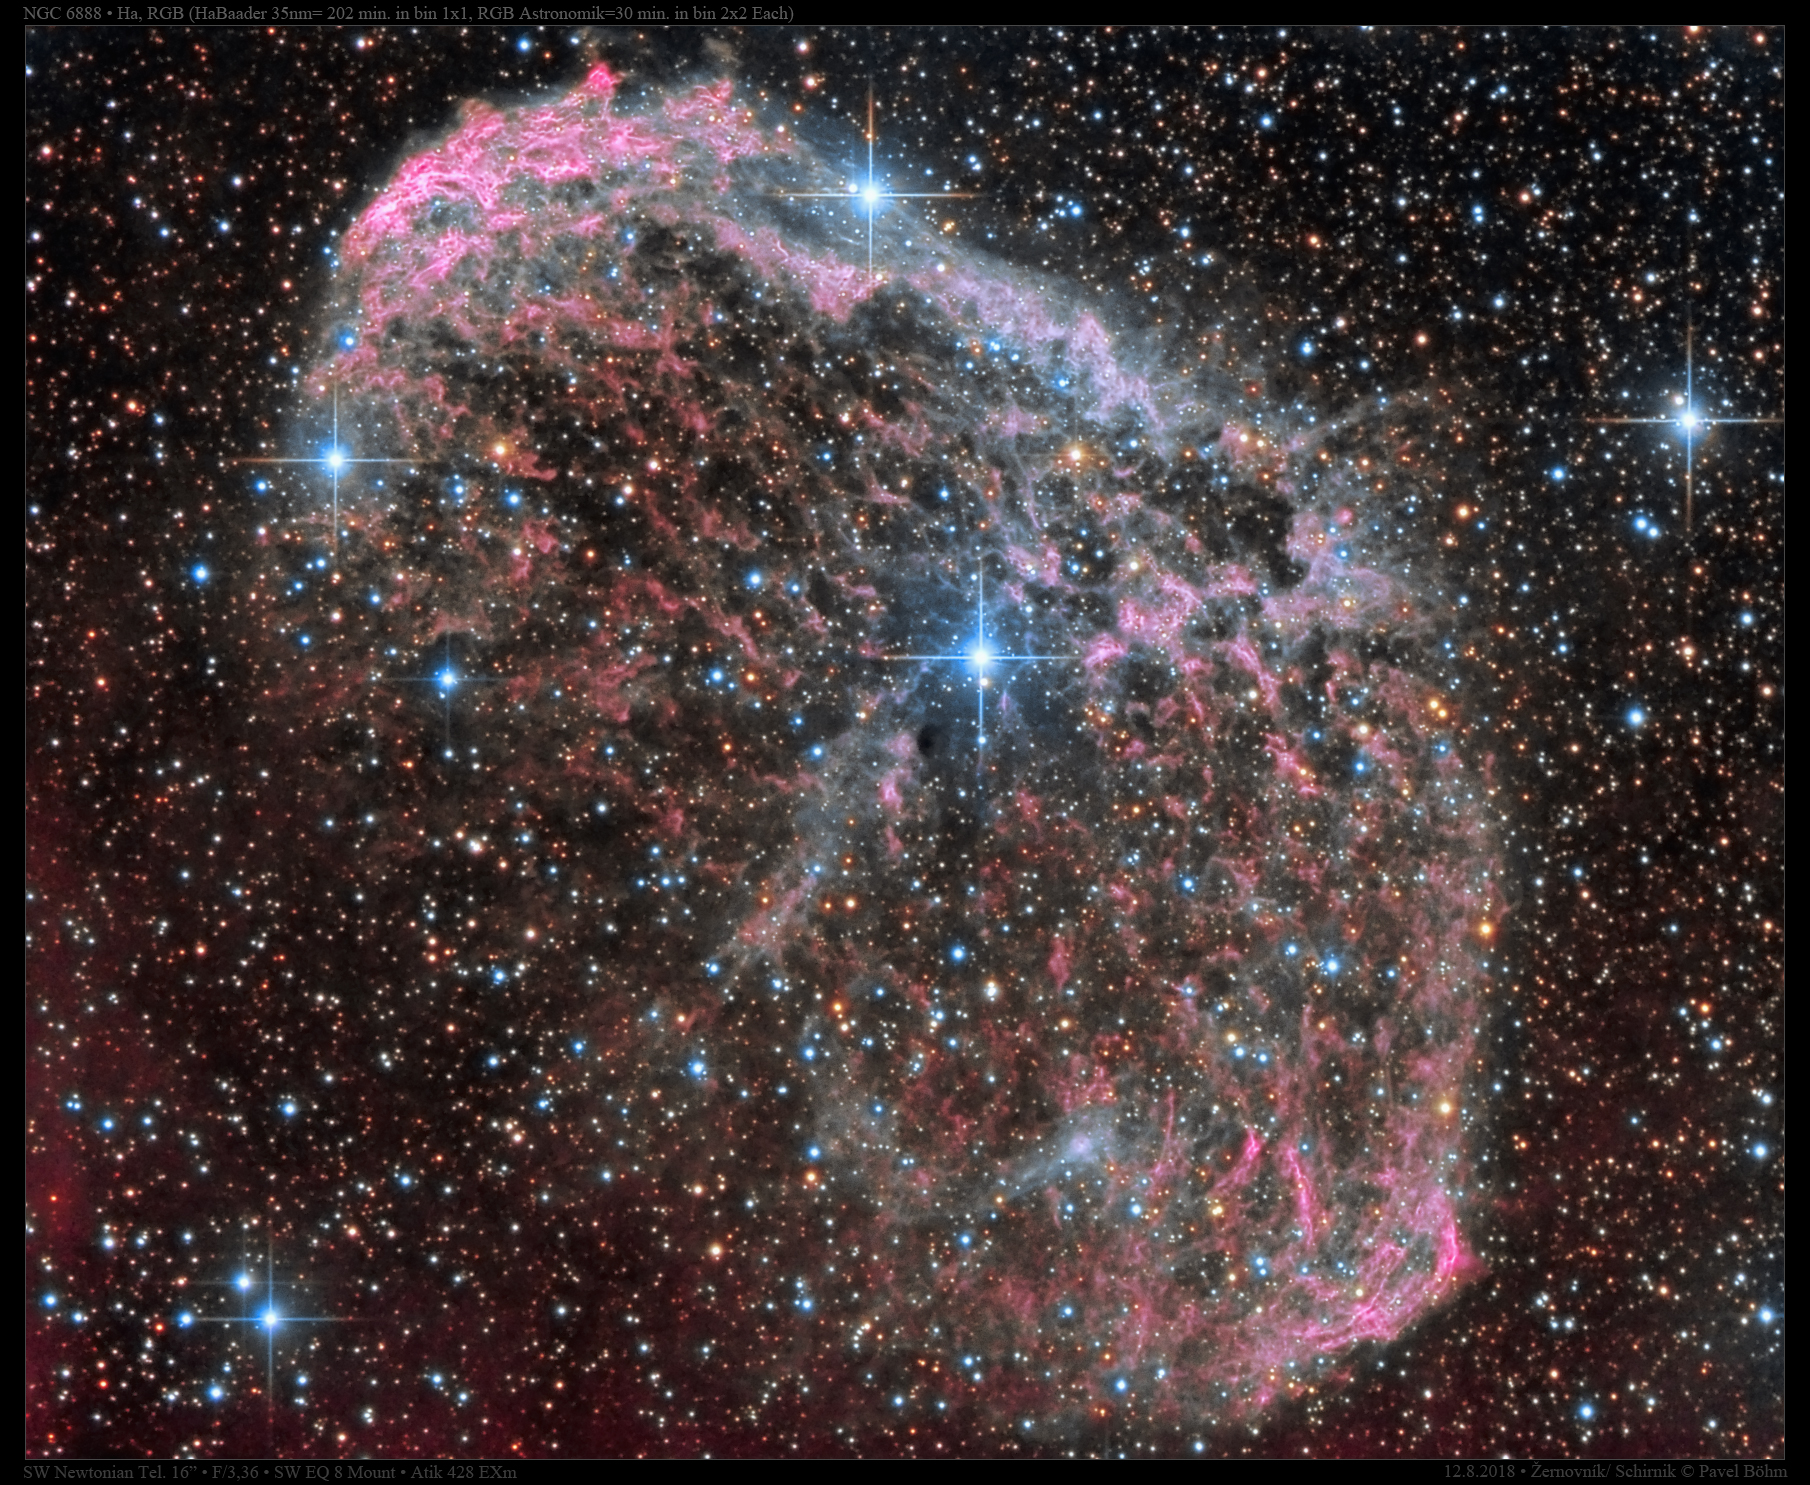 NGC6888 v HaRGB 100%